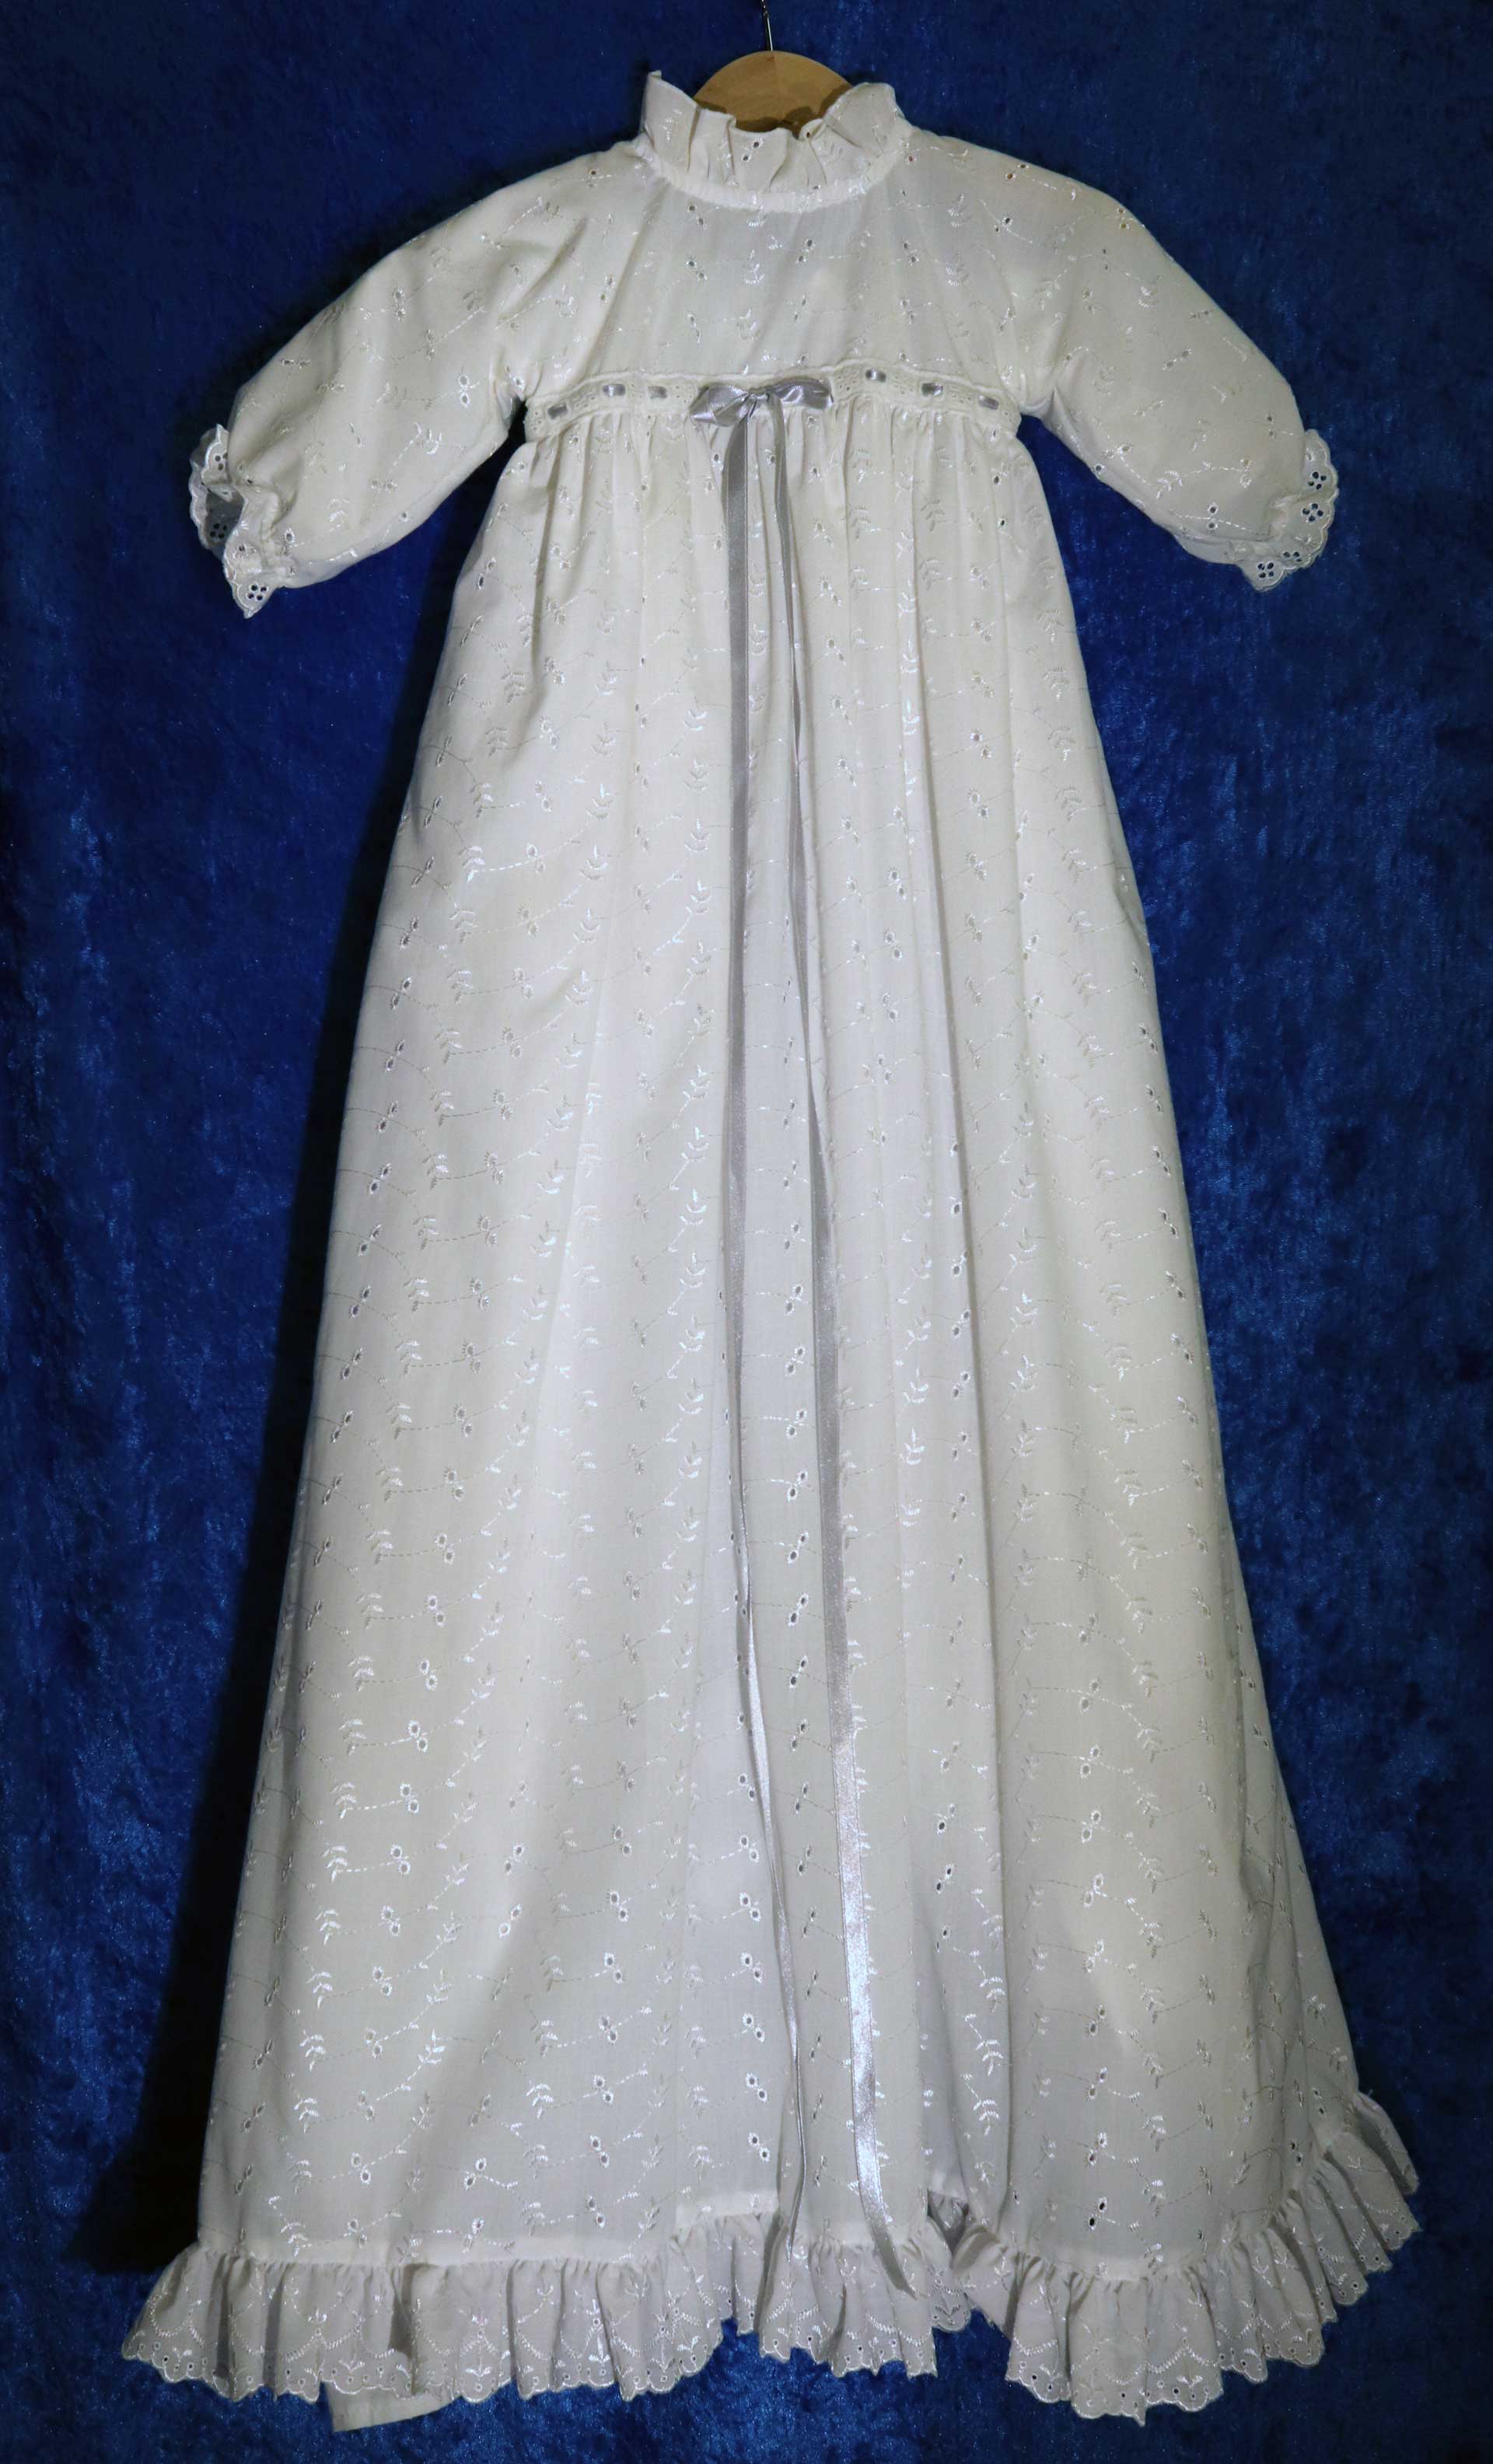 Dopklänning nr 5: Vit dopklänning med slät underklänning och överklänning i brodyr. Det finns band i olika färger att trä i.